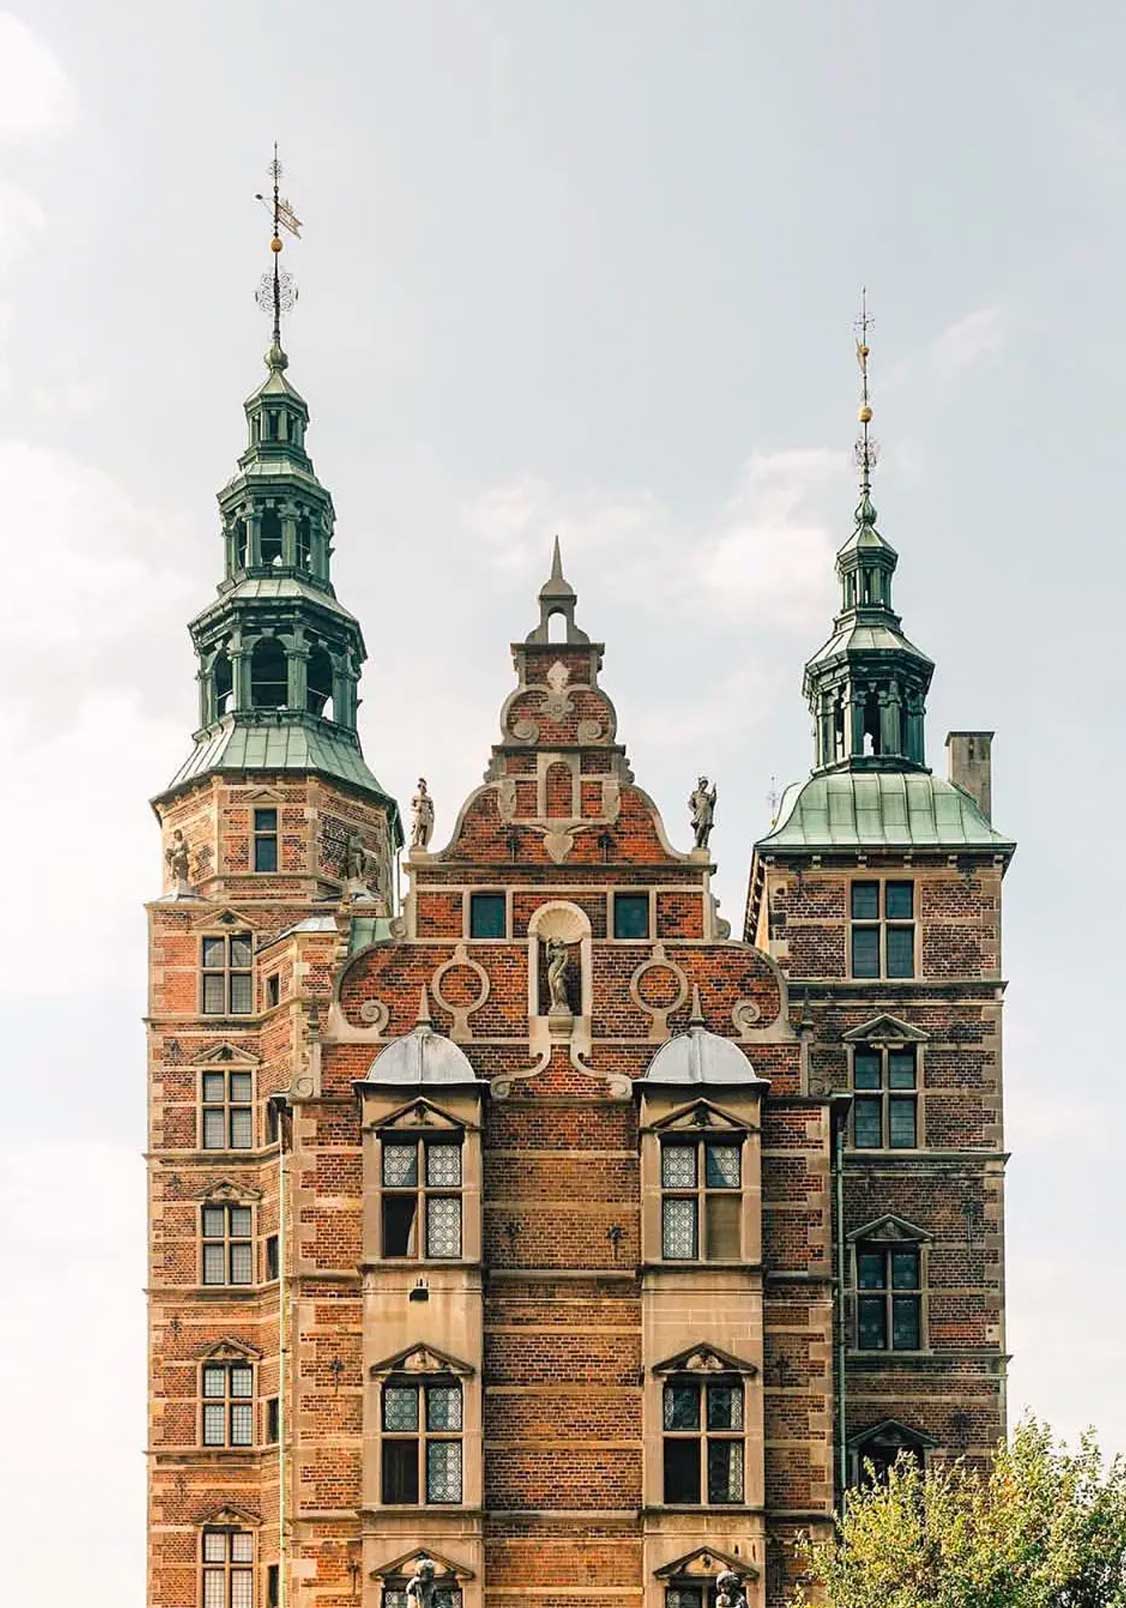 Close-up view of Rosenborg Castle, a Renaissance landmark in Copenhagen, Denmark.